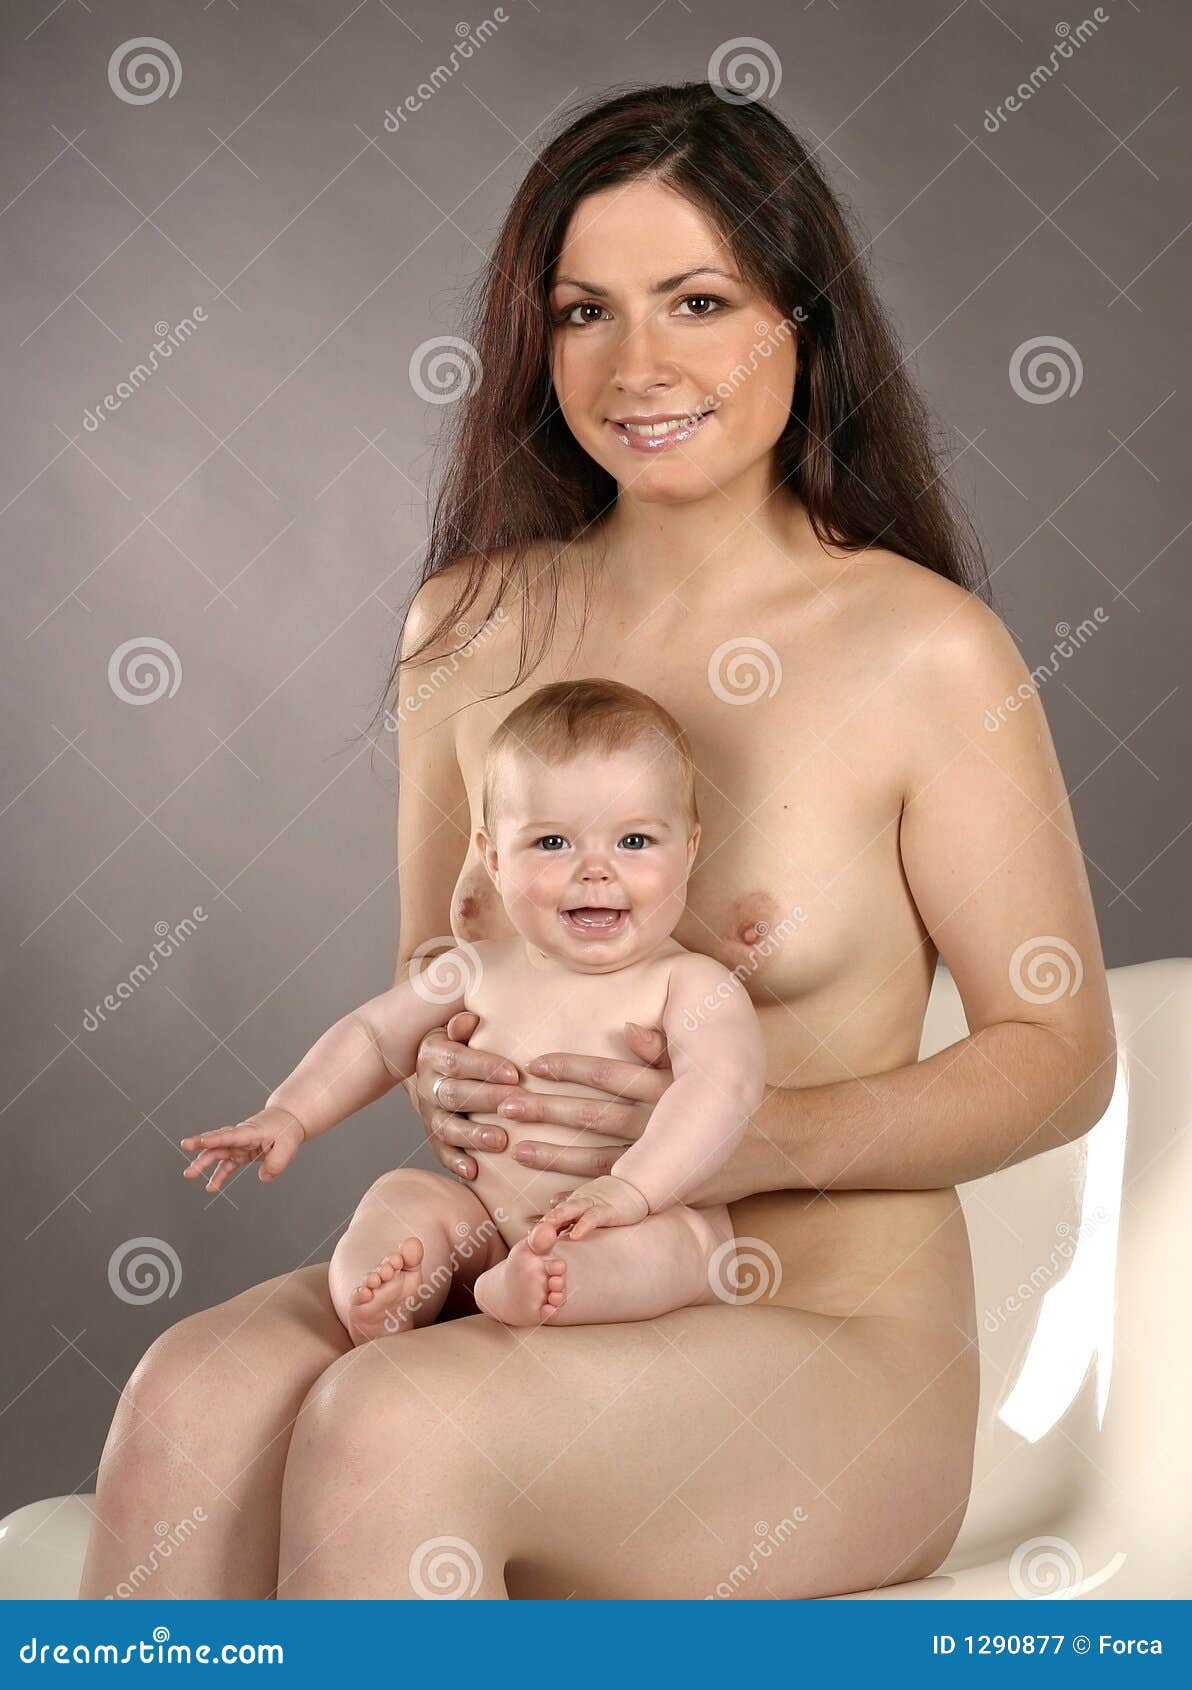 сын позировал голым маме фото 38